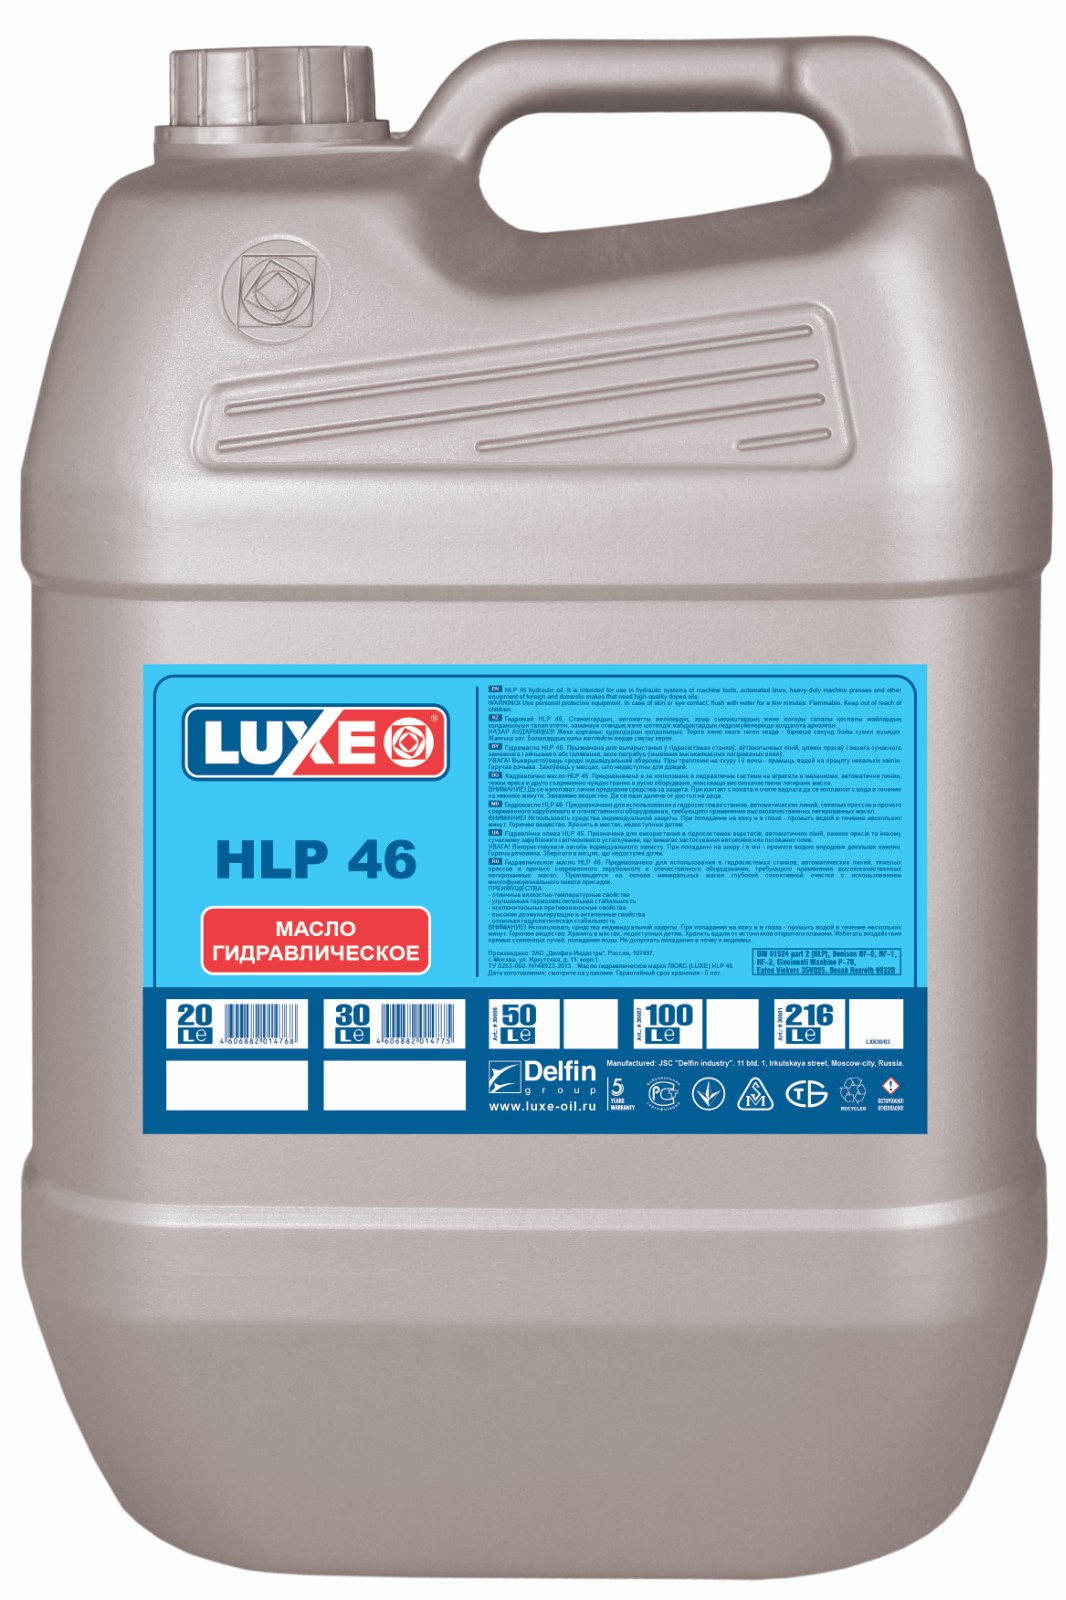 Масло гидравлическое LUXE HLP 46 20л